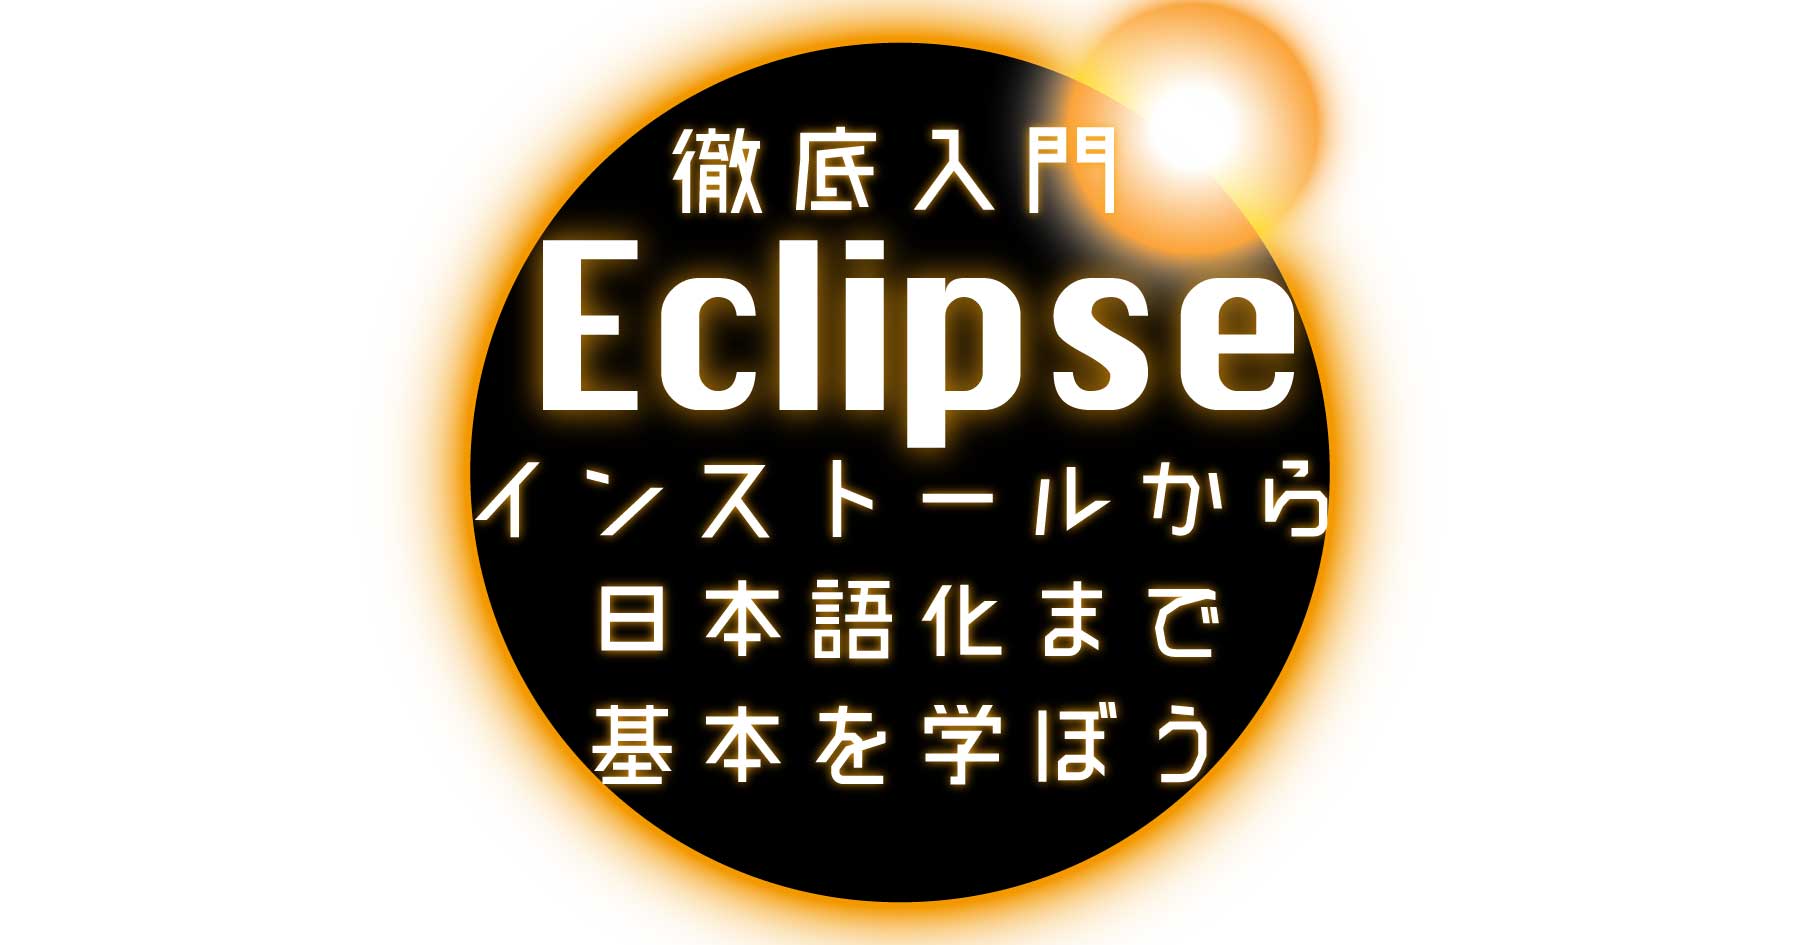 Eclipse、はじめの一歩 - インストールから便利な日本語化プラグインの導入まで